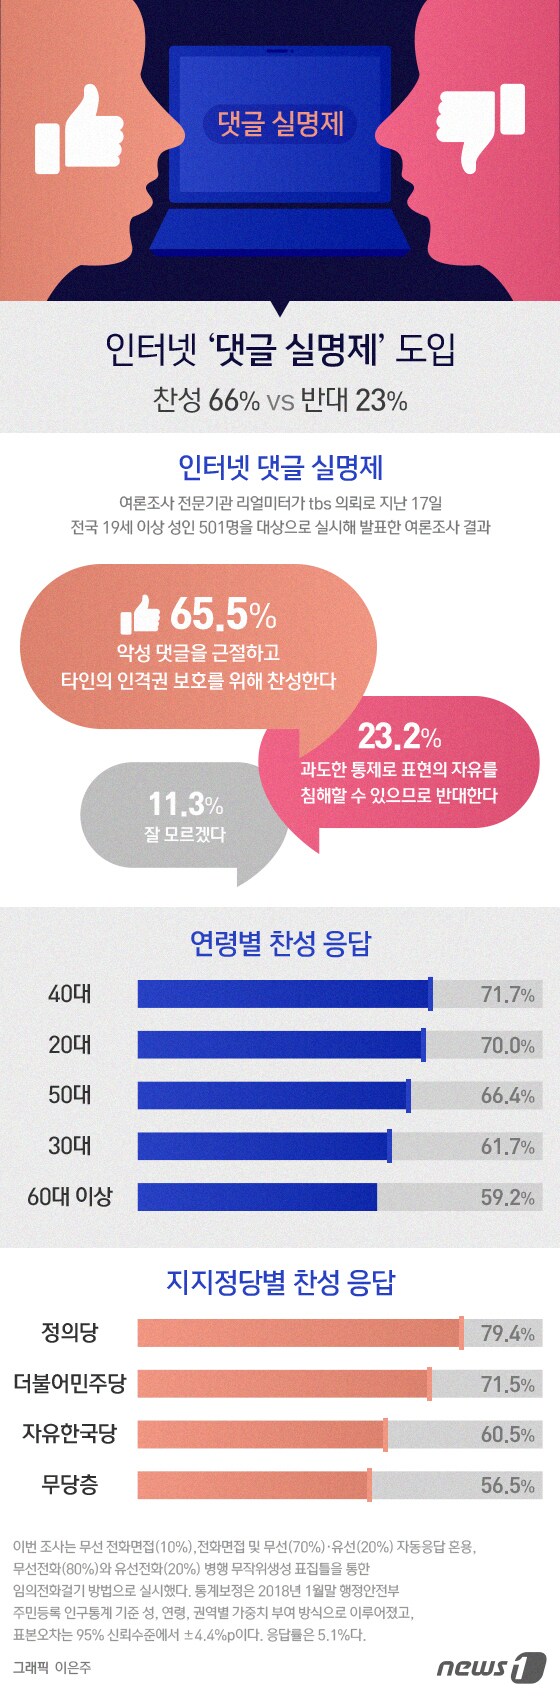 [그래픽뉴스] 인터넷 '댓글 실명제' 도입에 찬성 66% vs 반대 23%